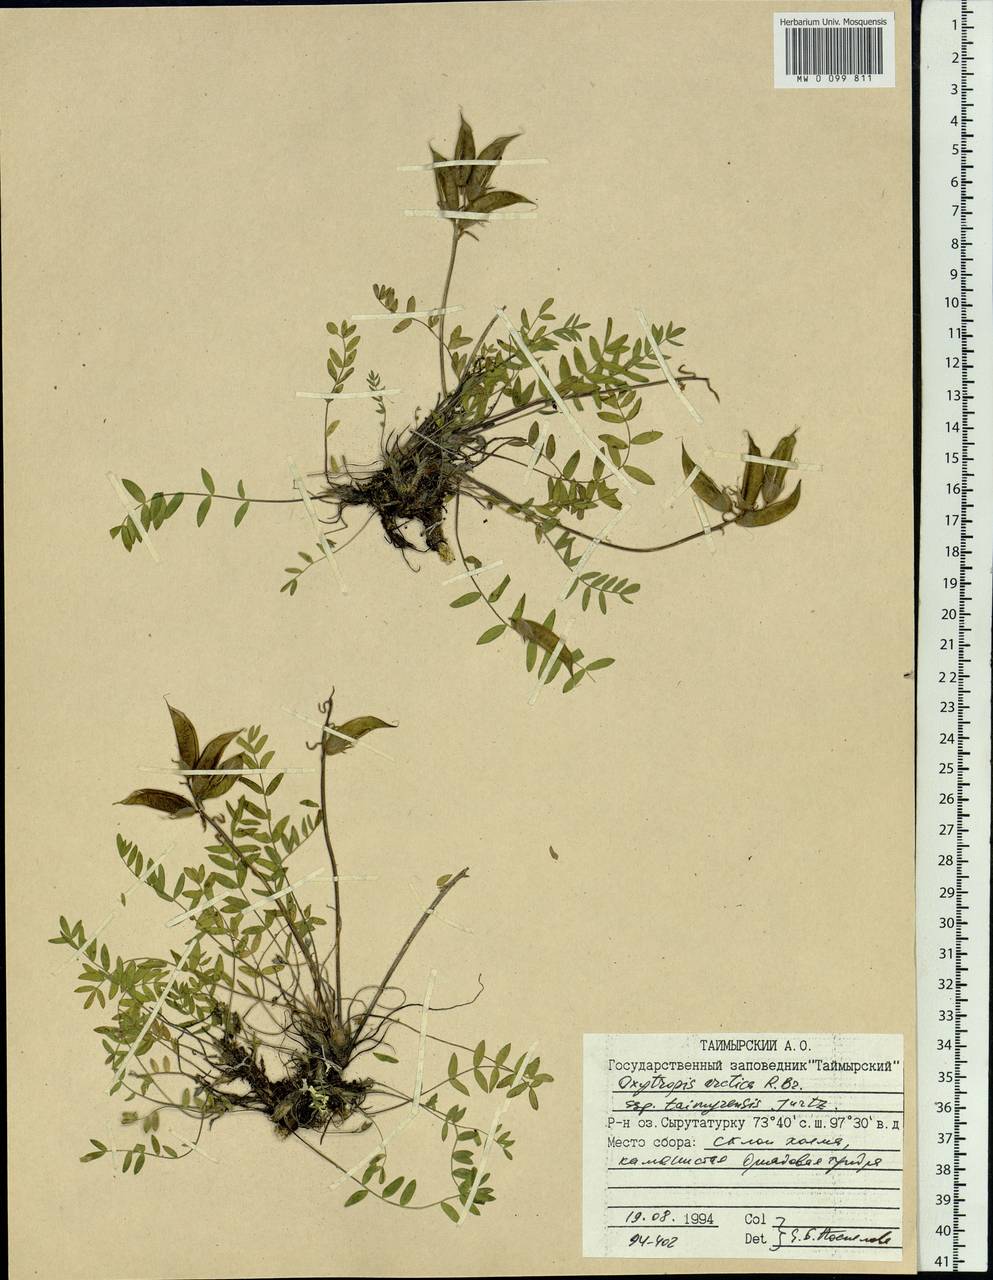 Oxytropis arctica subsp. taimyrensis Jurtzev, Сибирь, Центральная Сибирь (S3) (Россия)